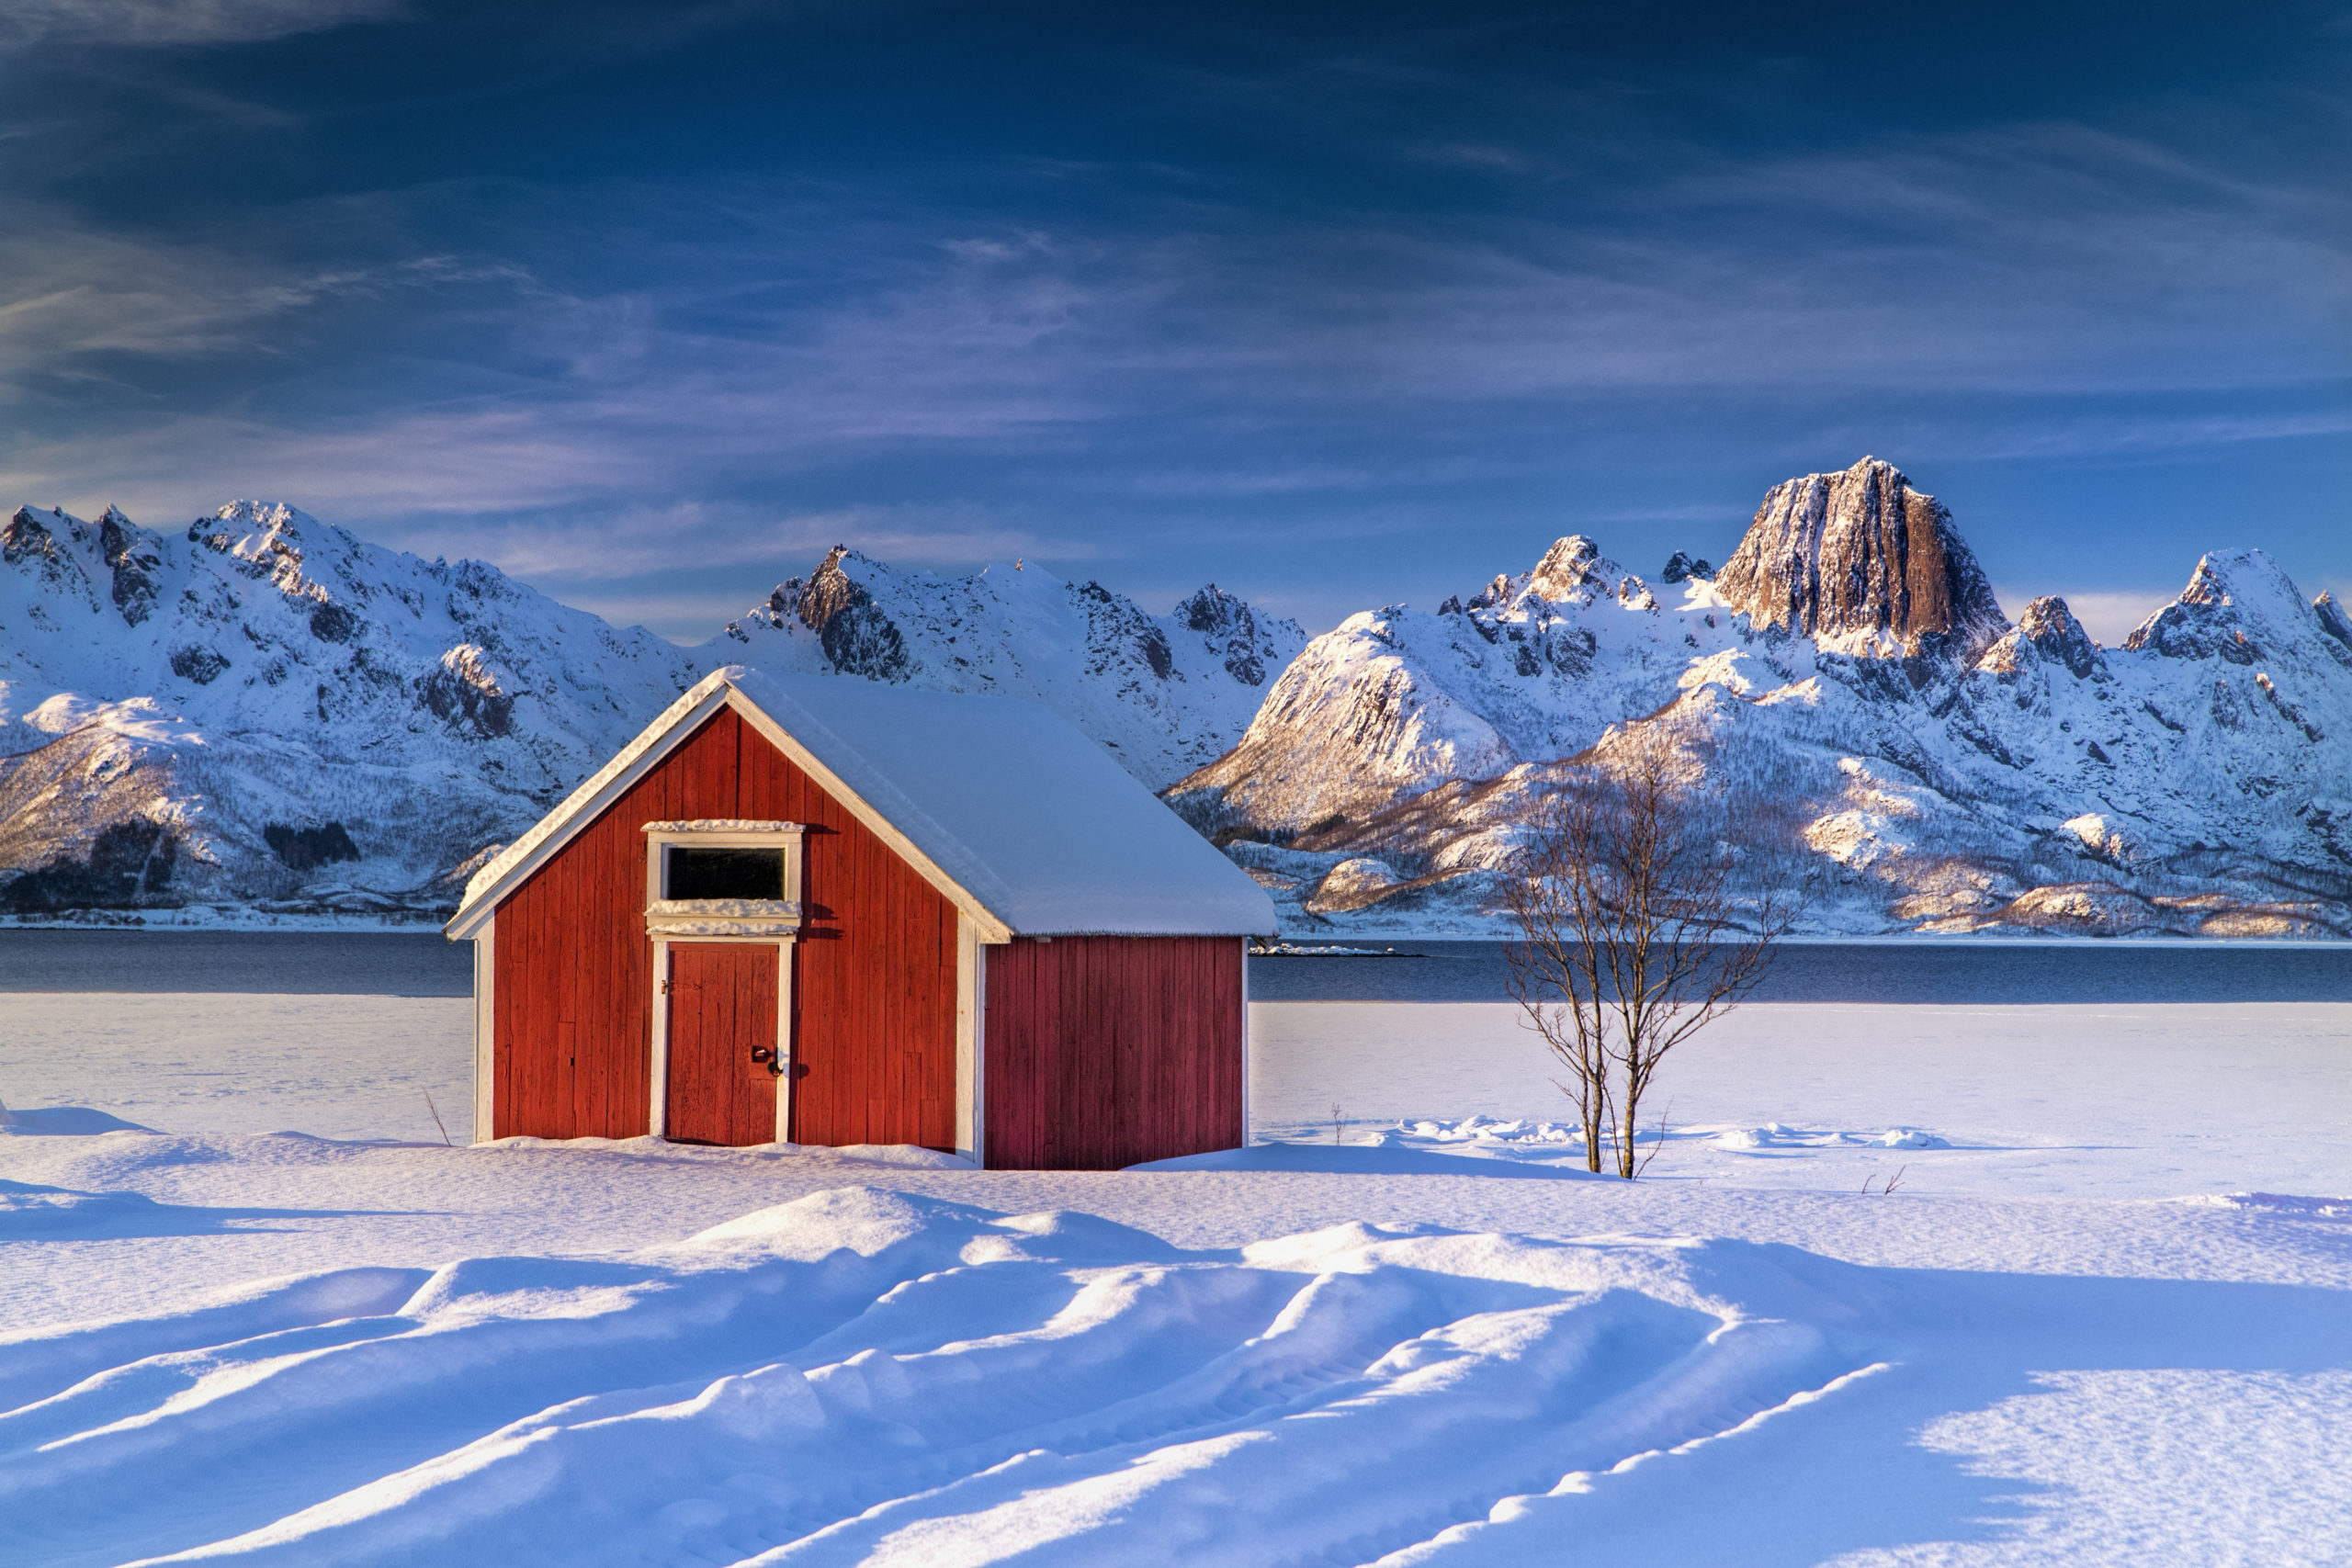 Mikrohus eller minihus i norge - kan man bo i et minihus på vinteren - kan man plassere minihuset hvor som helst